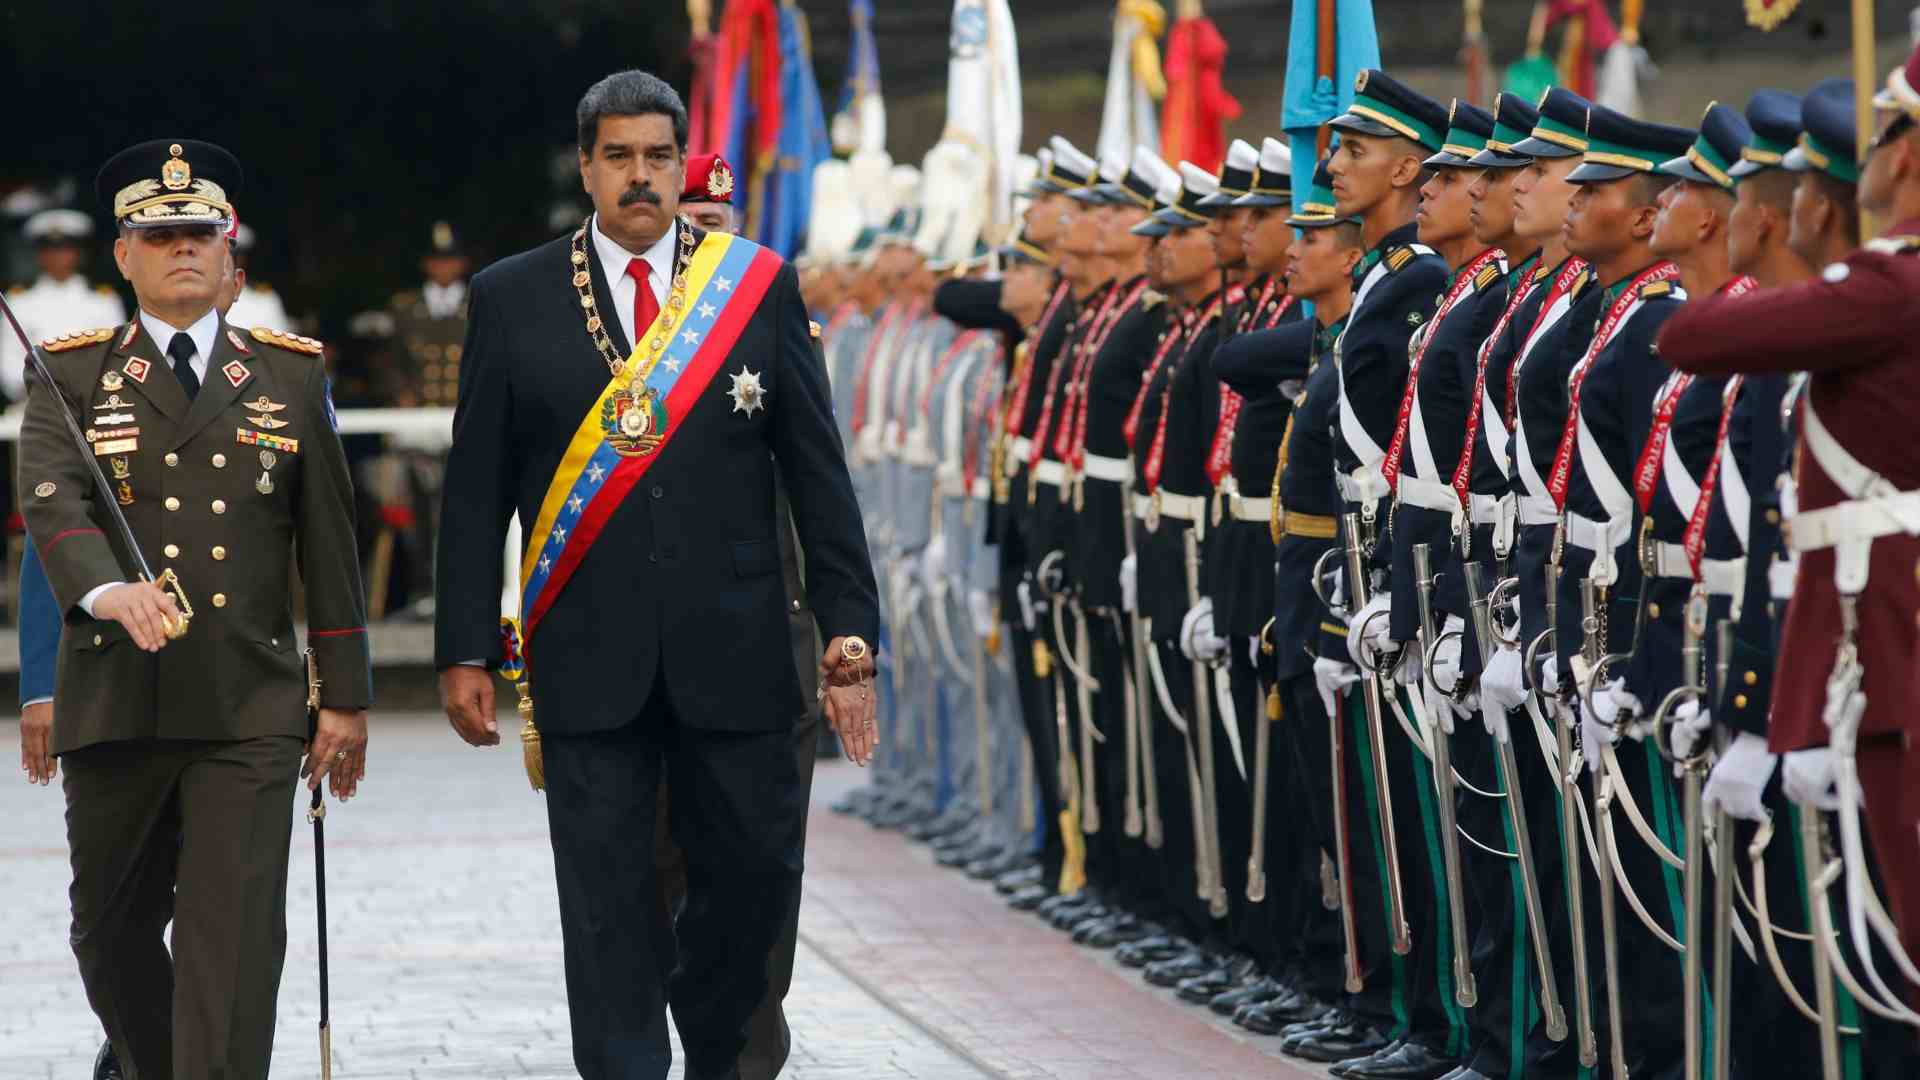 El Gobierno de Estados Unidos mantuvo reuniones secretas con militares rebeldes venezolanos